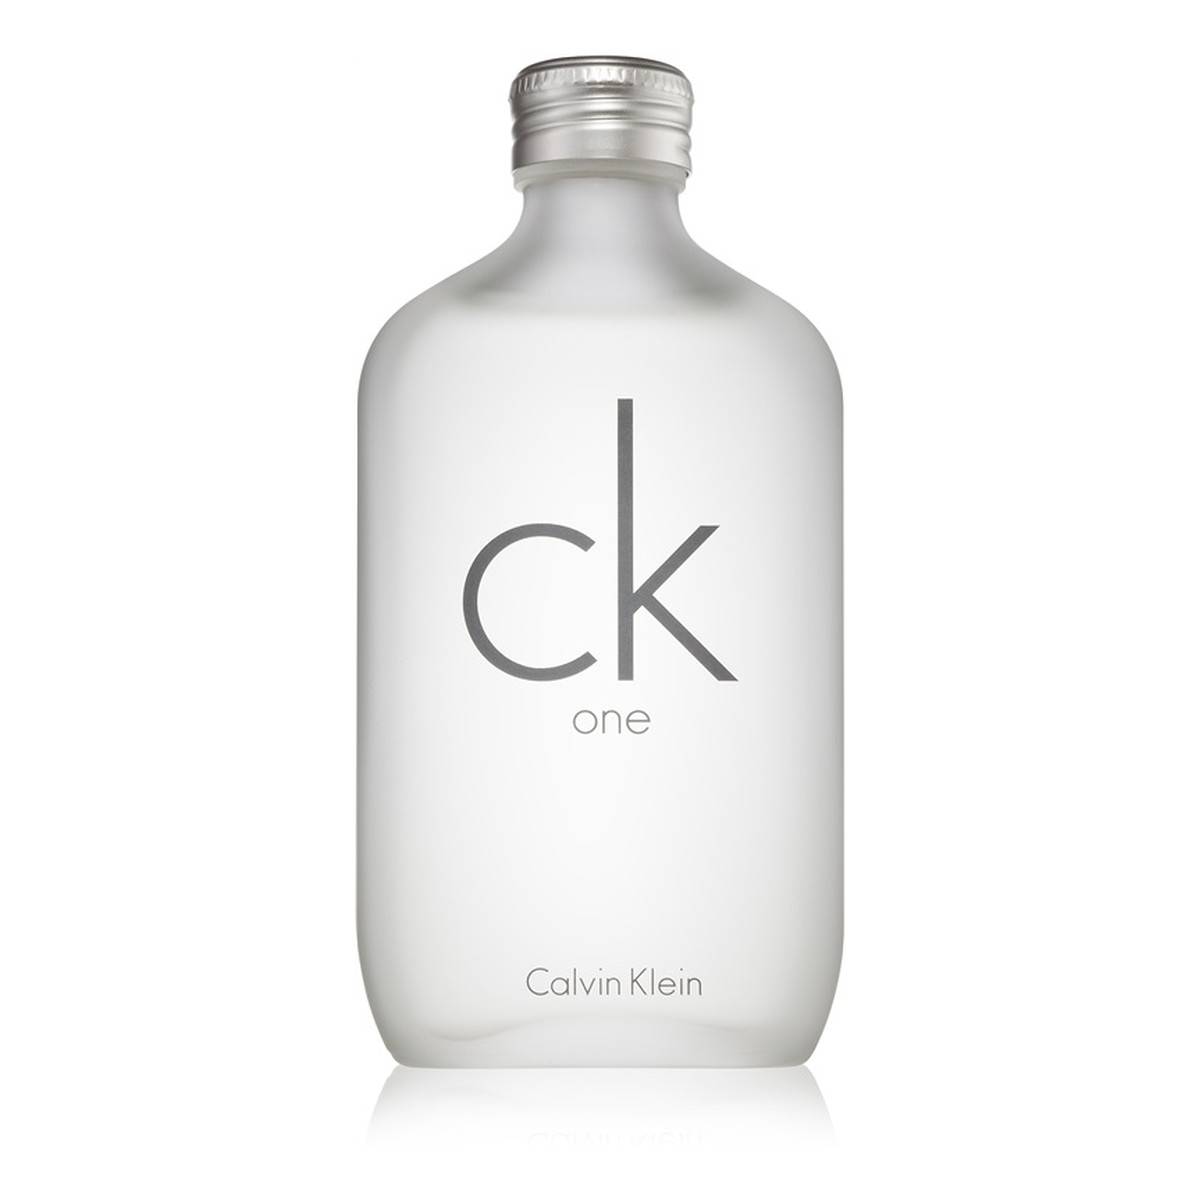 Calvin Klein CK One woda toaletowa unisex 100ml